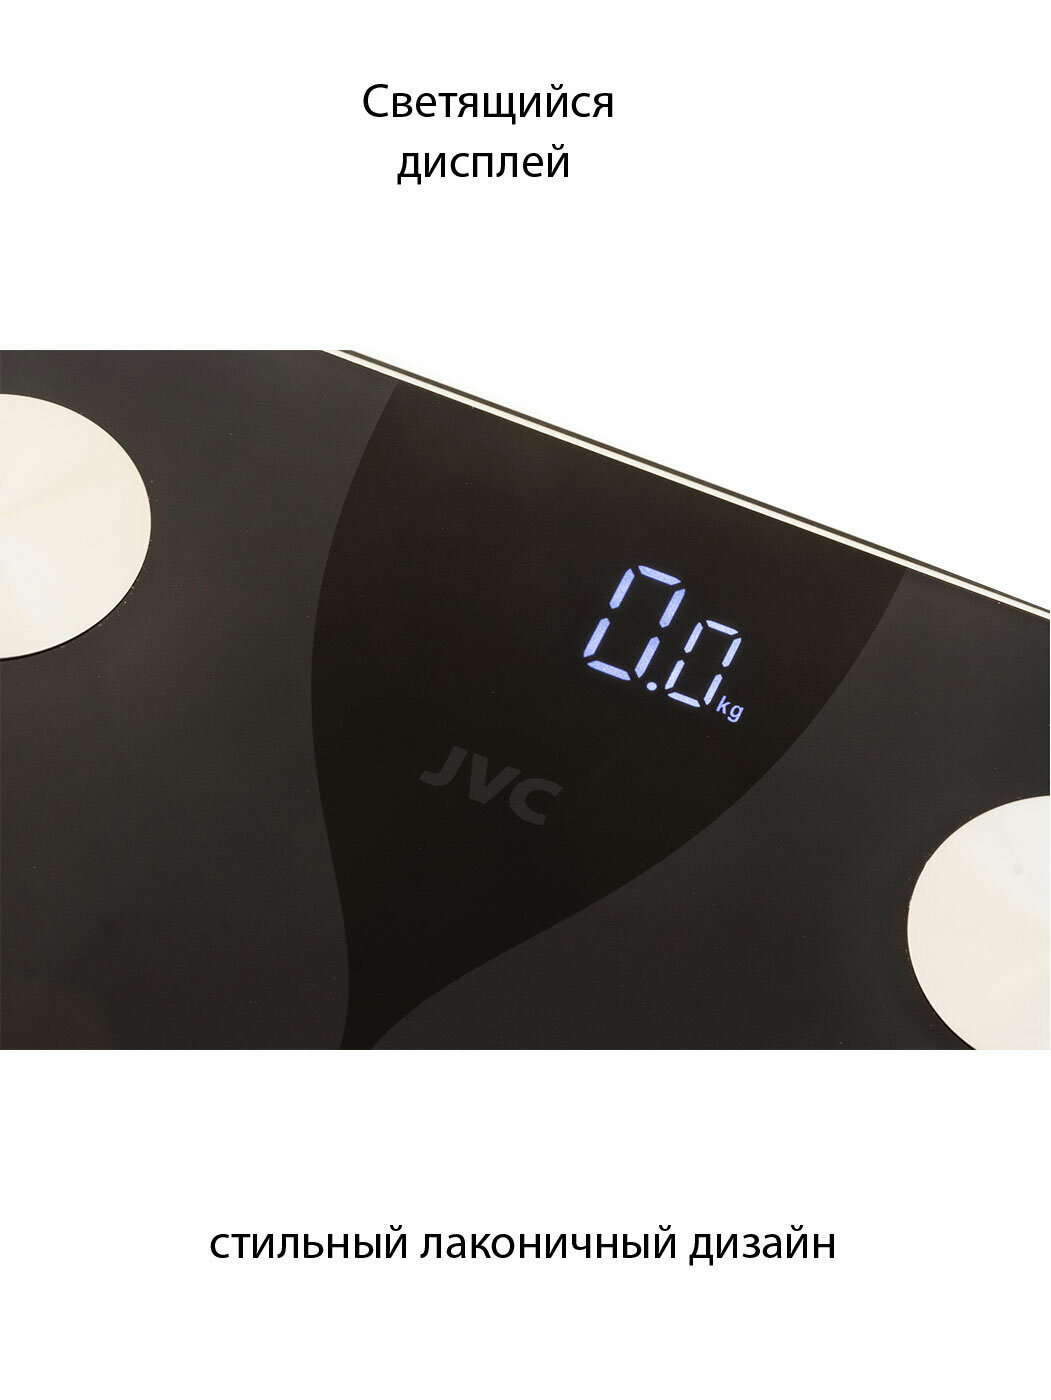 SMART напольные весы JVC управление со смартфона, до 180 кг, функции BMI, AMR, BMR, измерение жира, жидкости, мышечной и костной ткани - фотография № 4